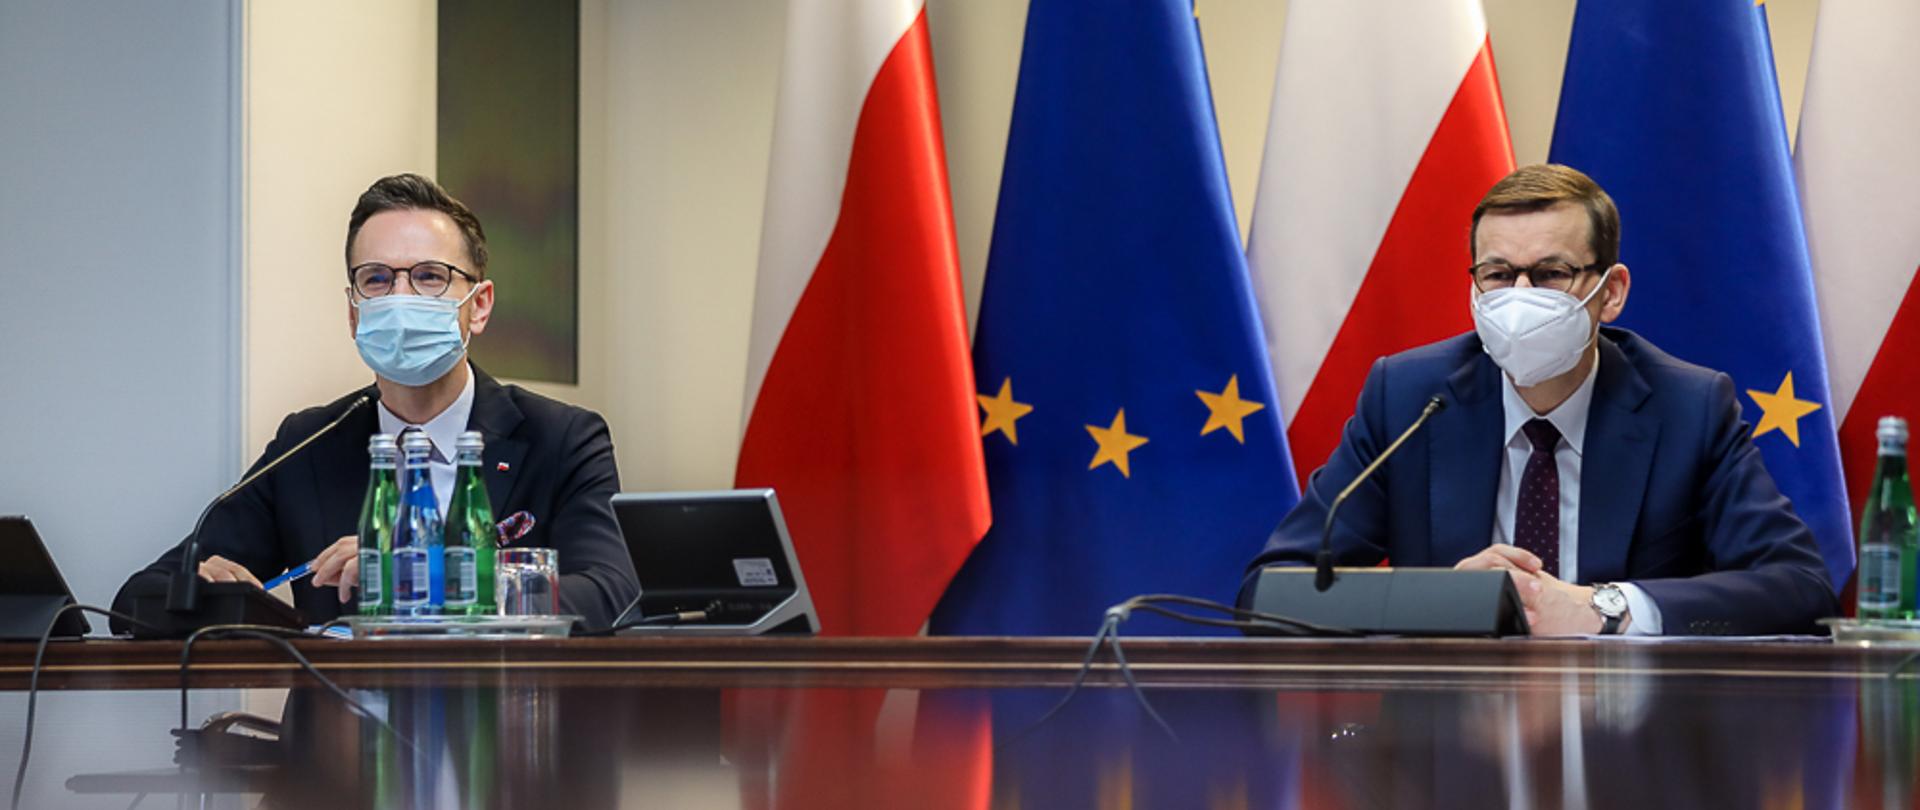 Premier Mateusz Morawiecki i wiceminister Waldemar Buda siedzą przy stole. W tle flagi Polski i UE.